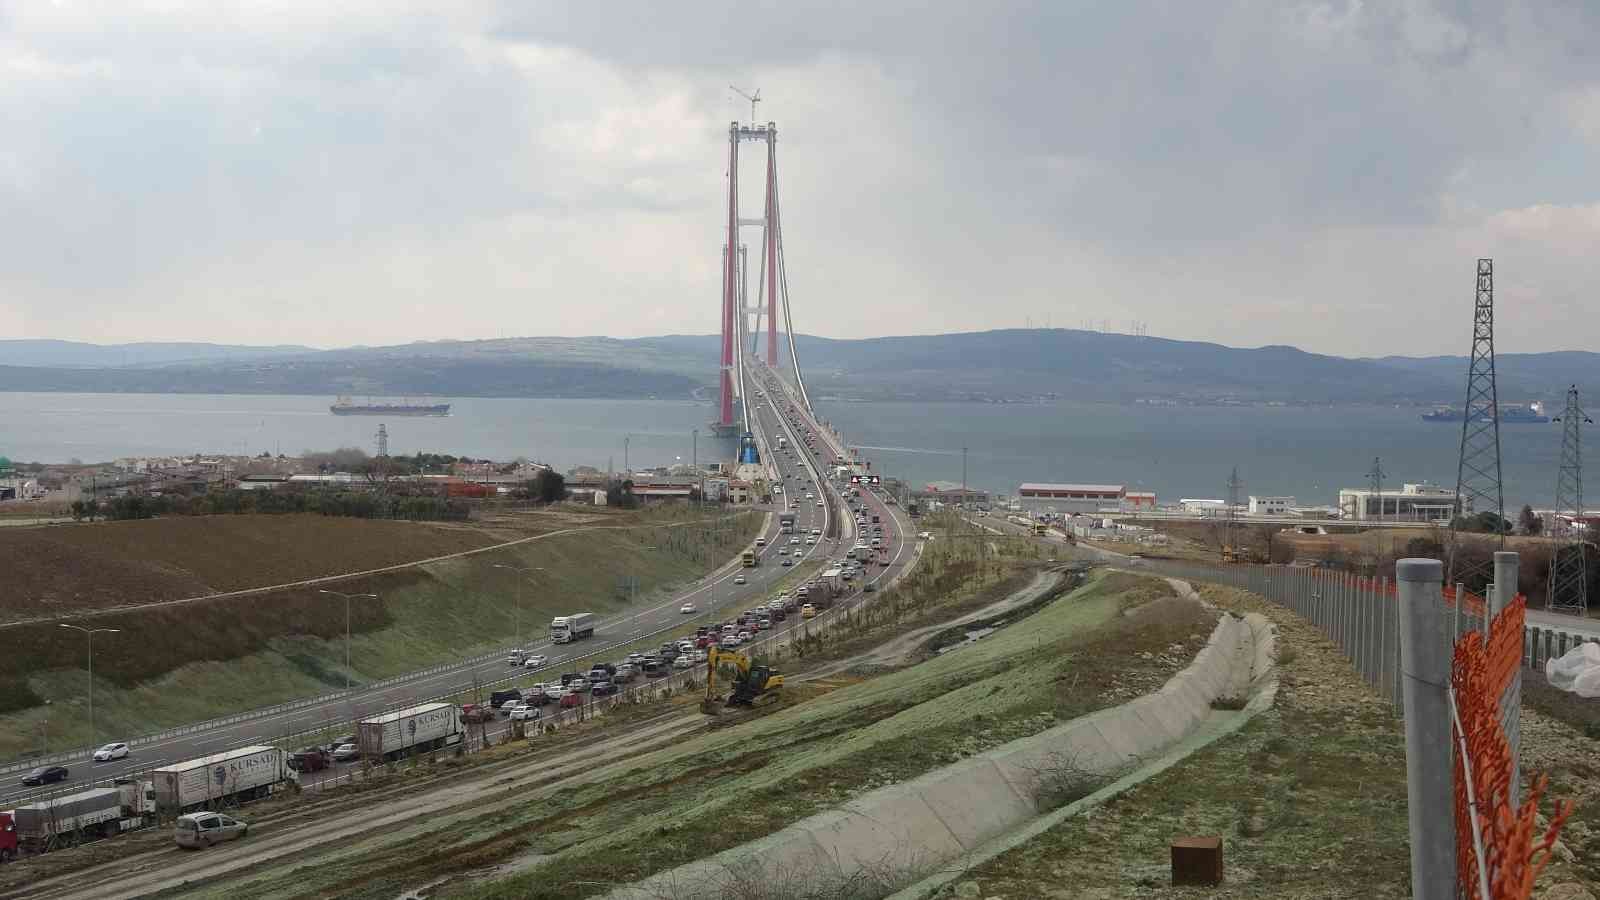 Dünyanın en büyük orta açıklıklı köprüsü unvanına sahip olan 1915 Çanakkale Köprüsü’nün araç geçişlerine açılmasının ardından uzun araç ...